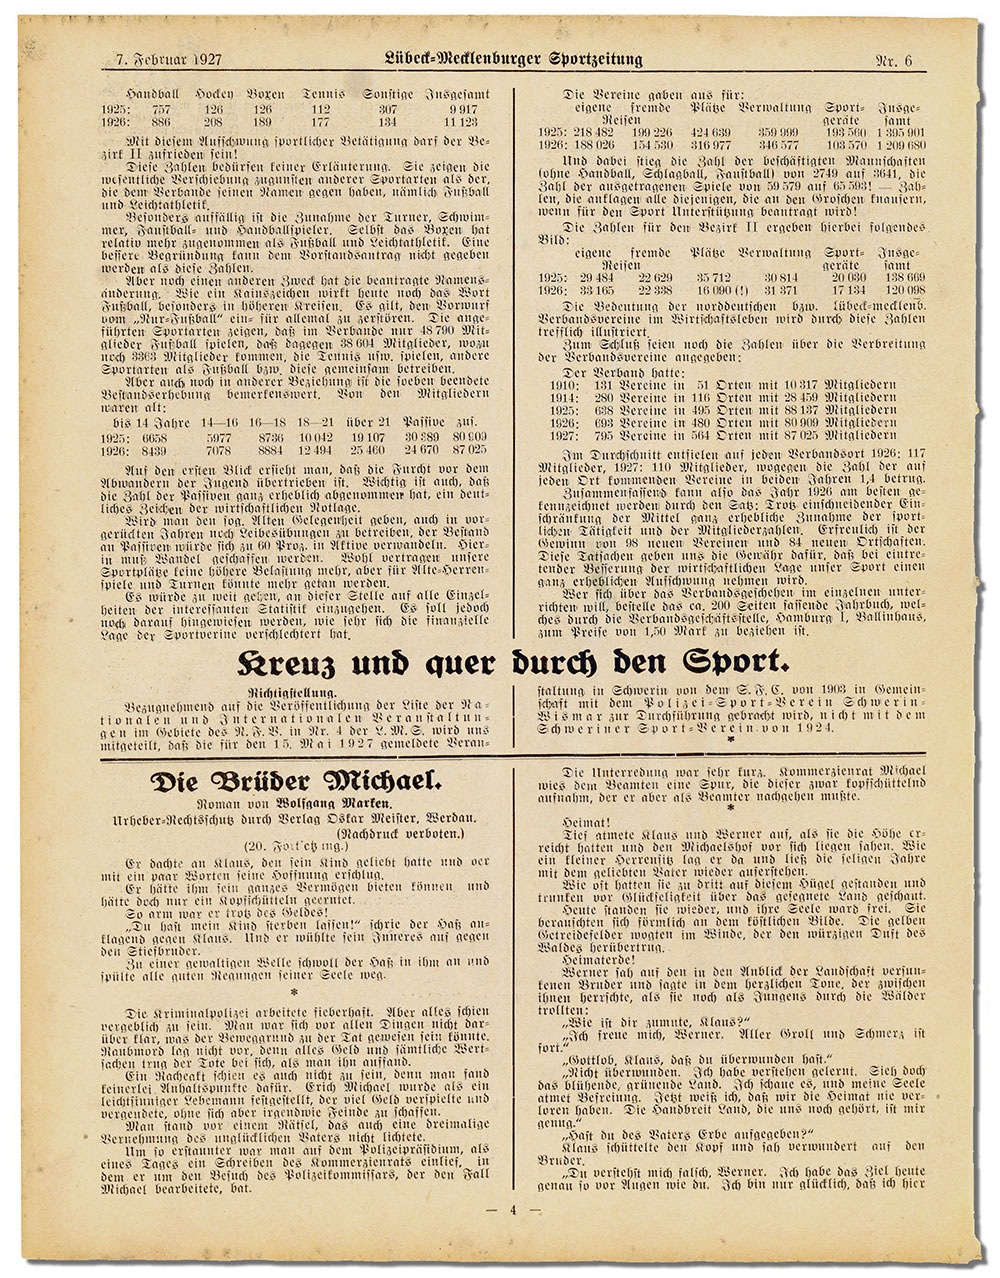 Die Lübeck-Mecklenburger Sport-Zeitung – Ausgabe vom 7.2.1927